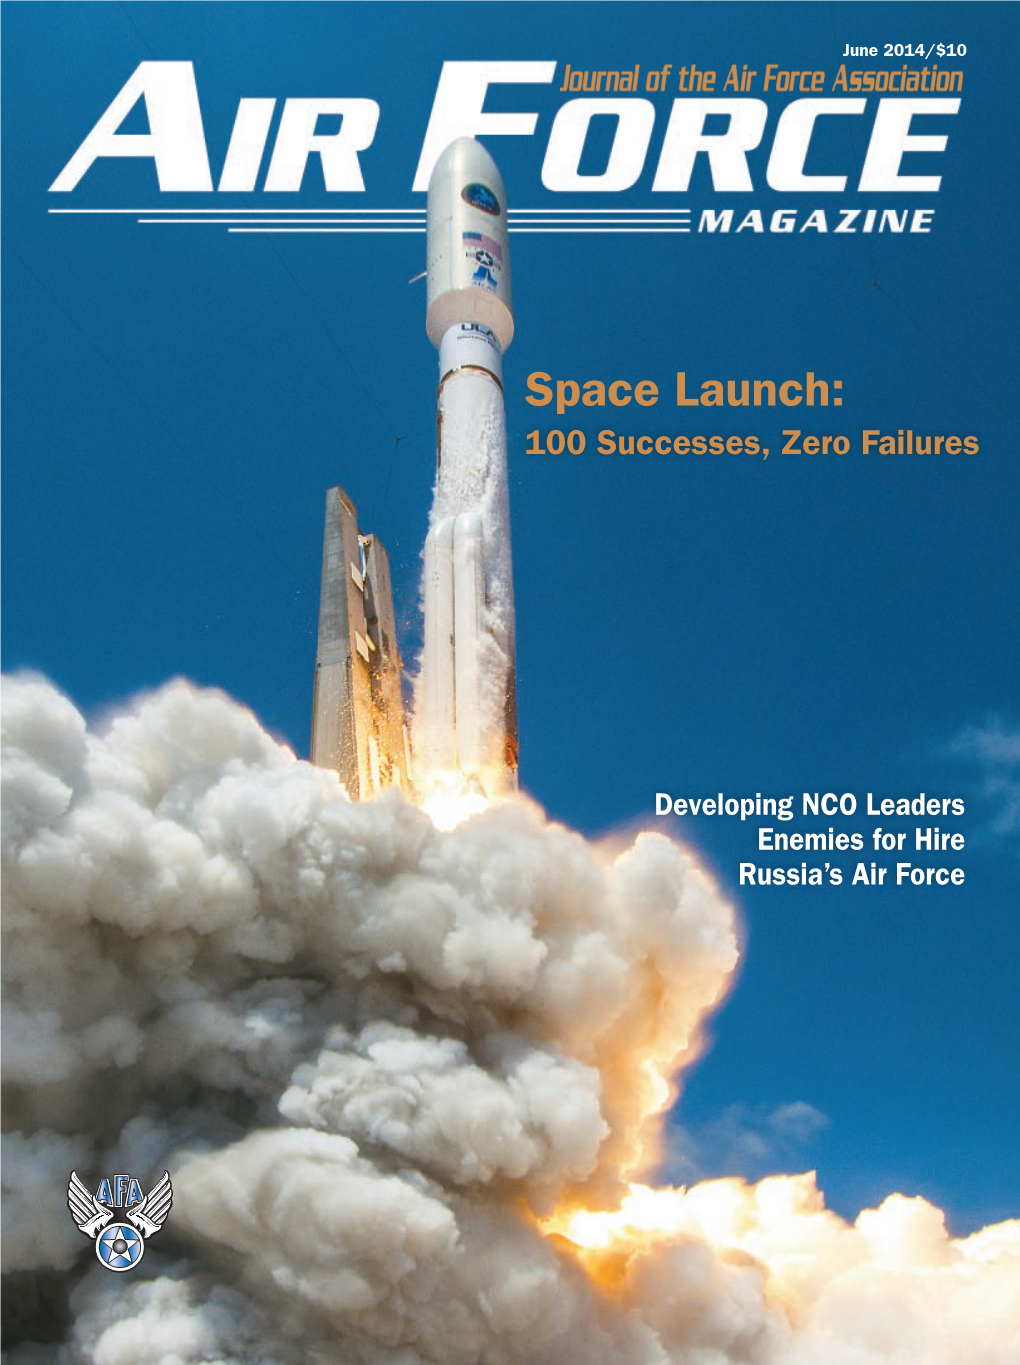 Space Launch: 100 Successes, Zero Failures